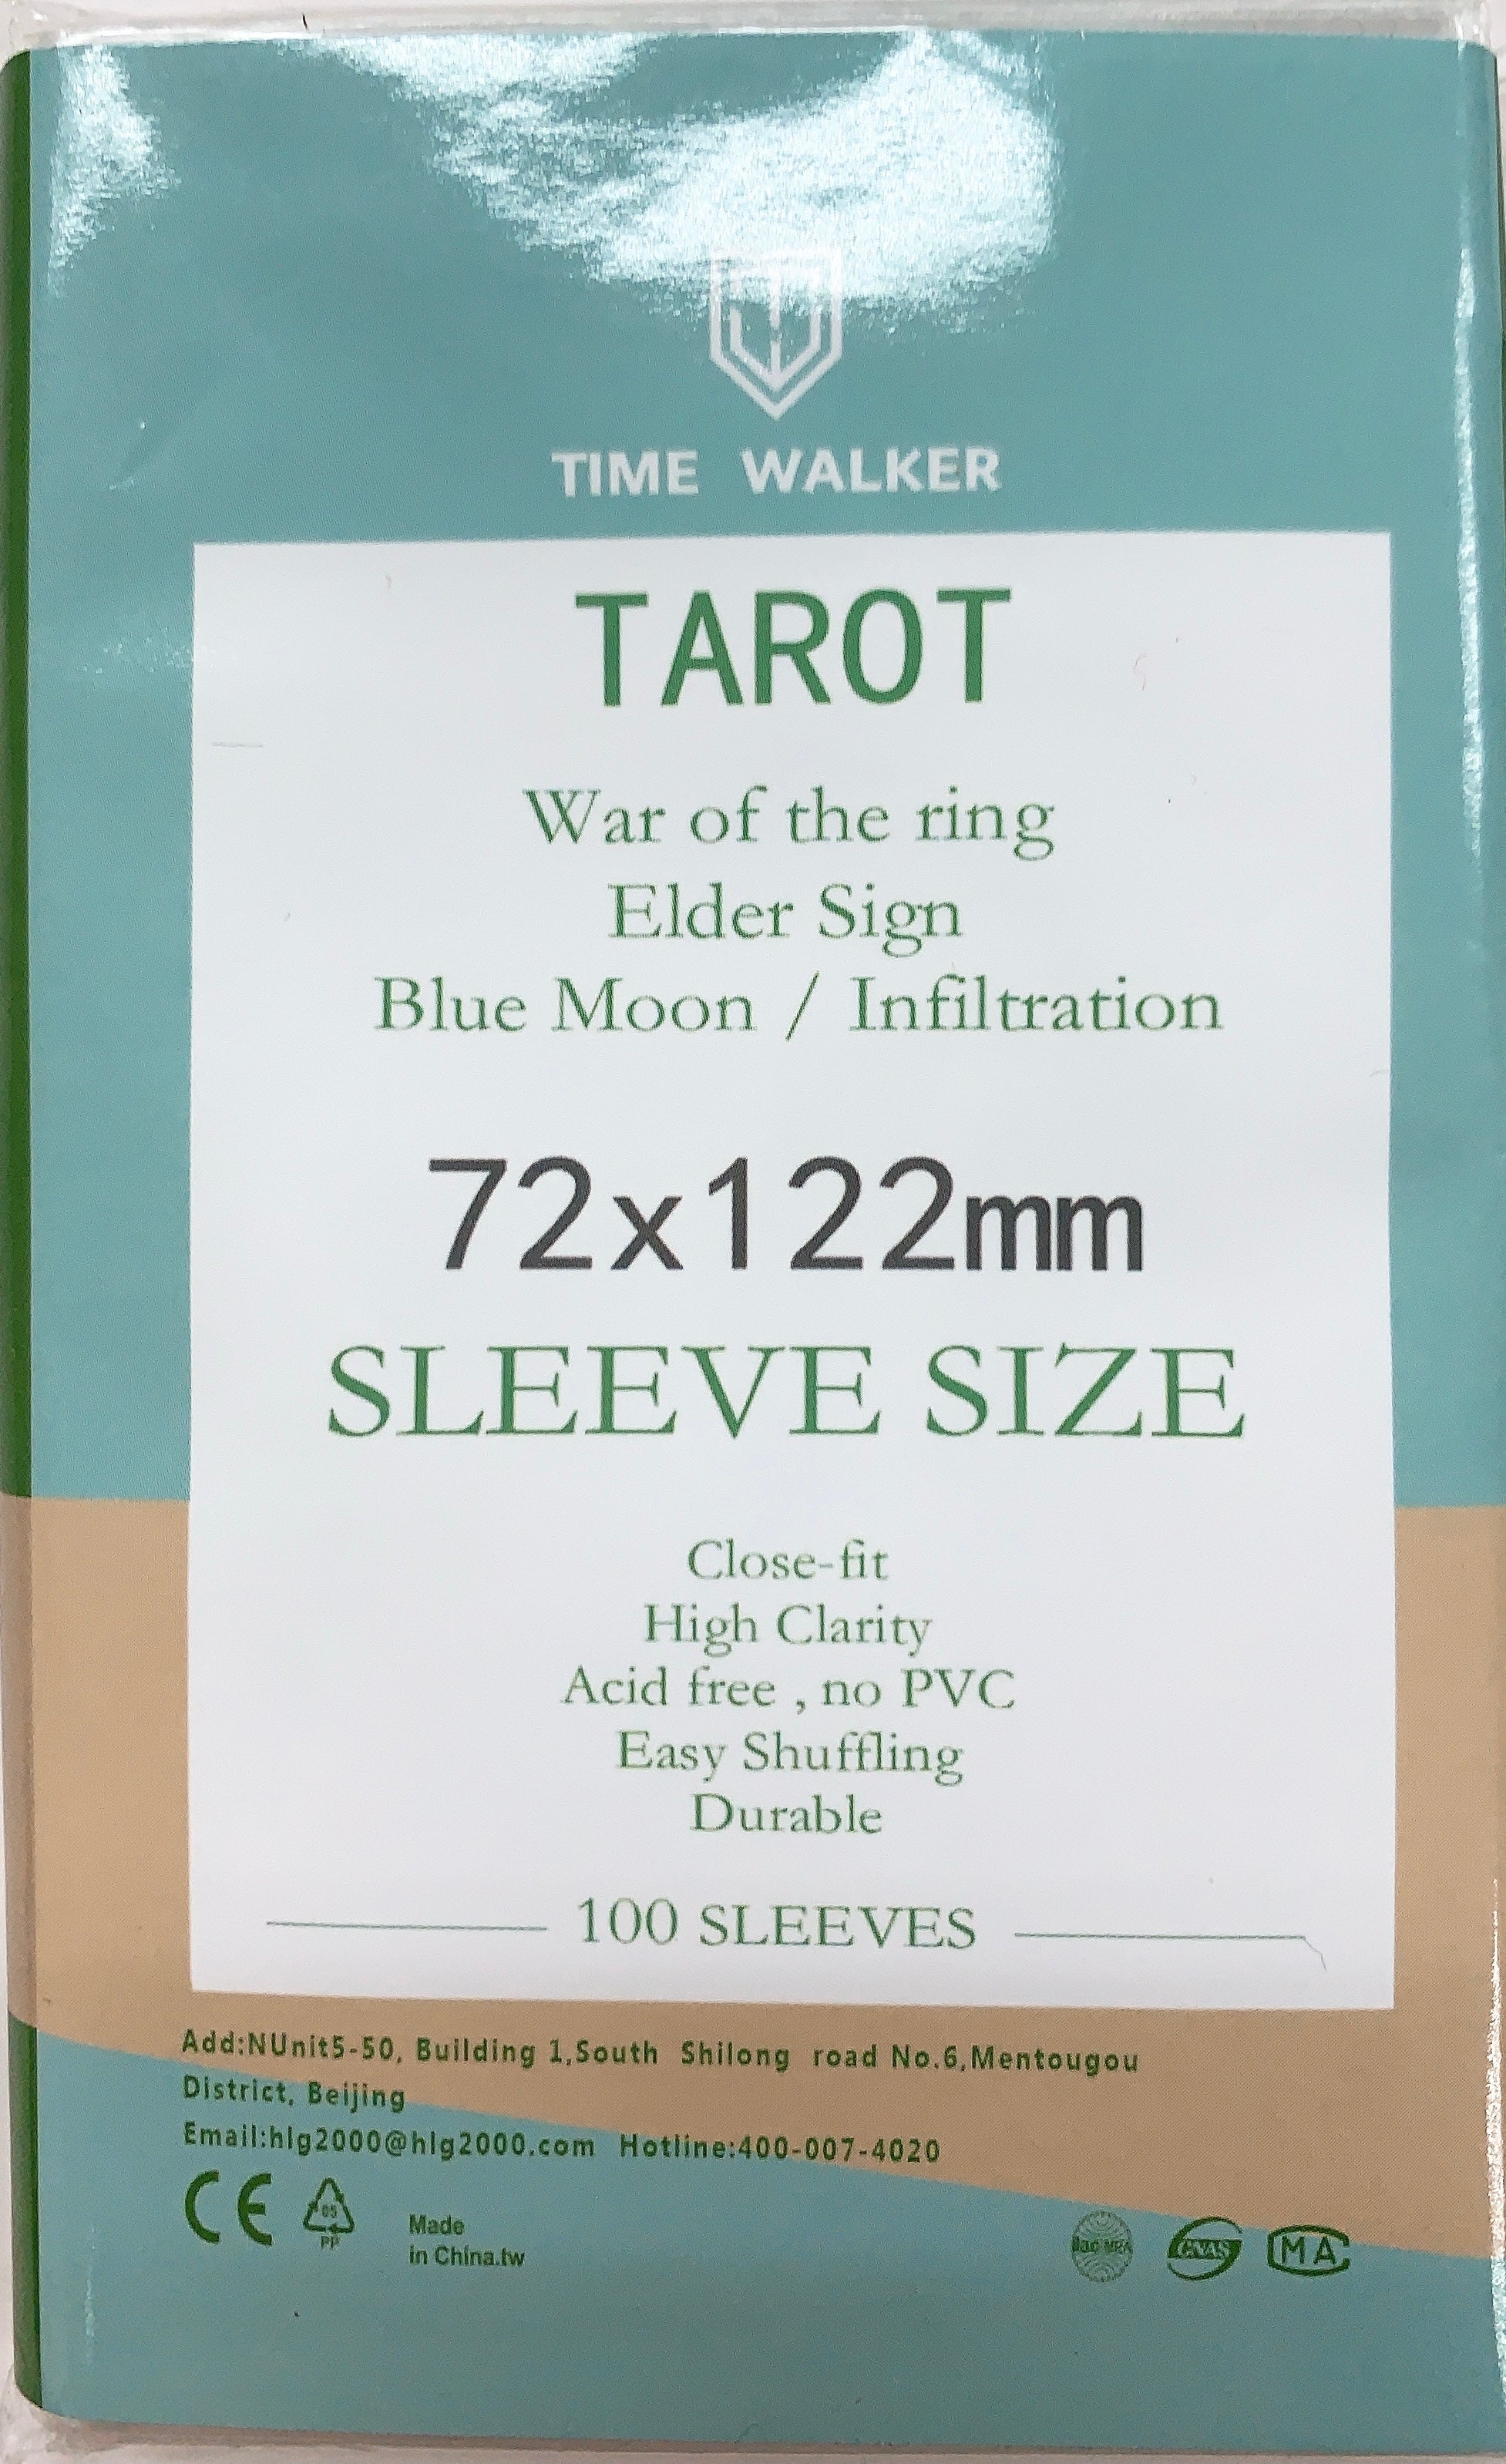 TW Sleeve 72X122mm - 100/pack - TW 卡套 72x122mm - 100/包 - [GoodMoveBG]